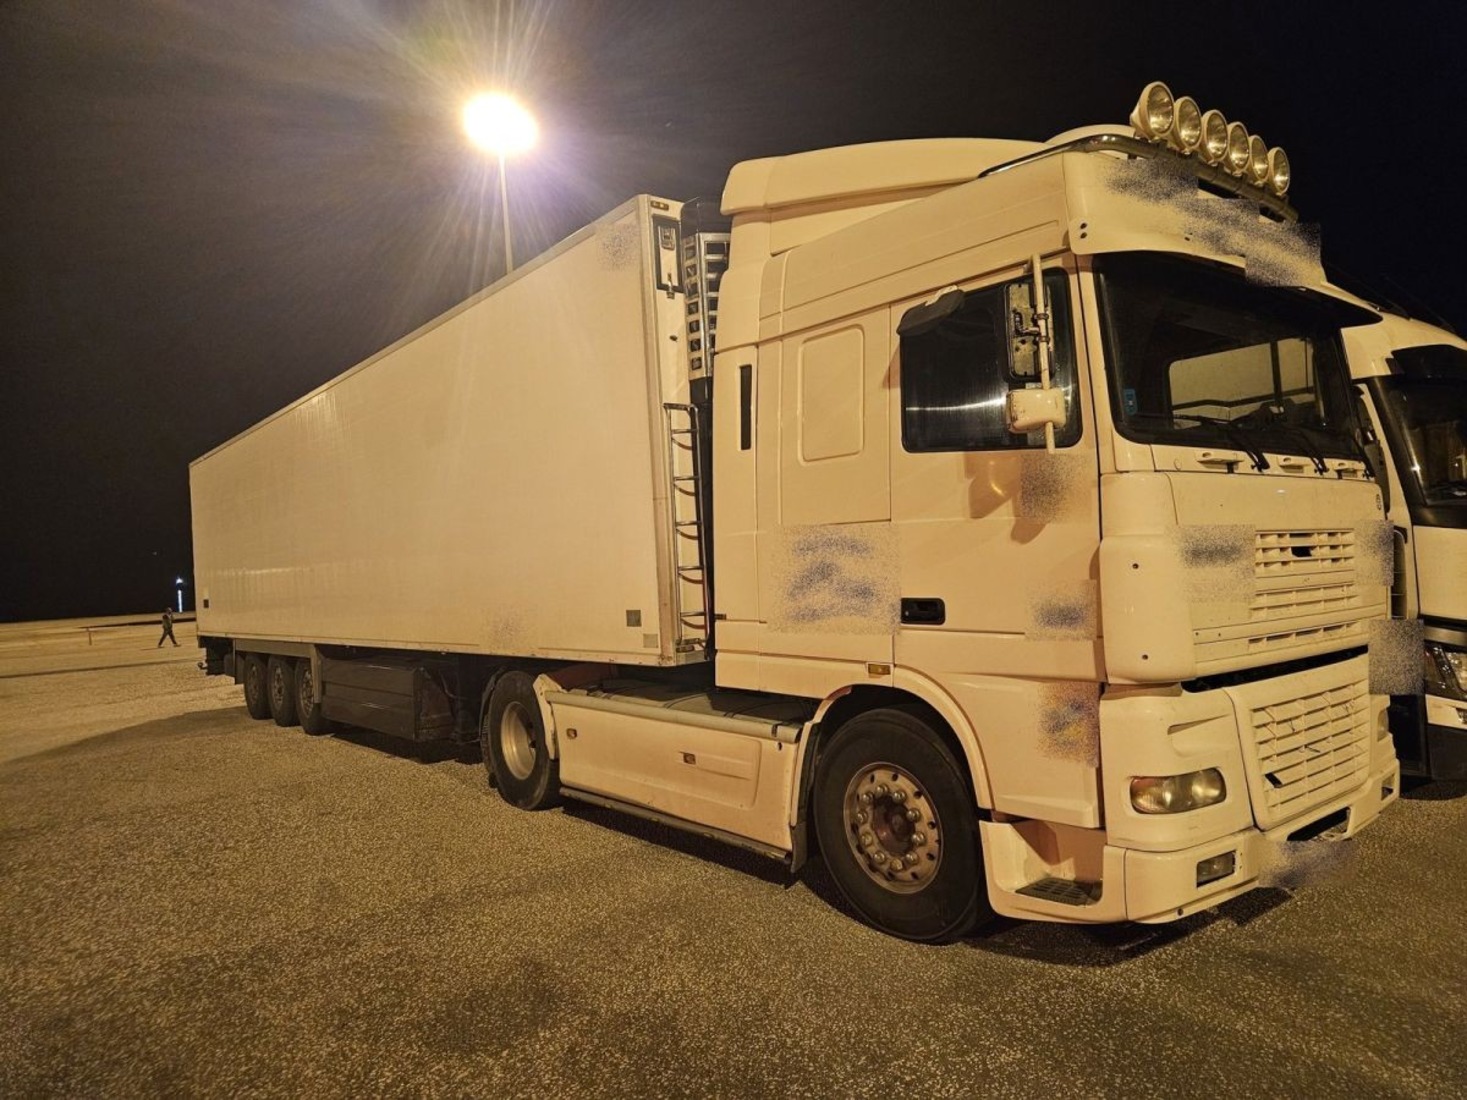 Ηγουμενίτσα: Βρέθηκαν πάνω από 200 κιλά ναρκωτικών σε φορτηγό